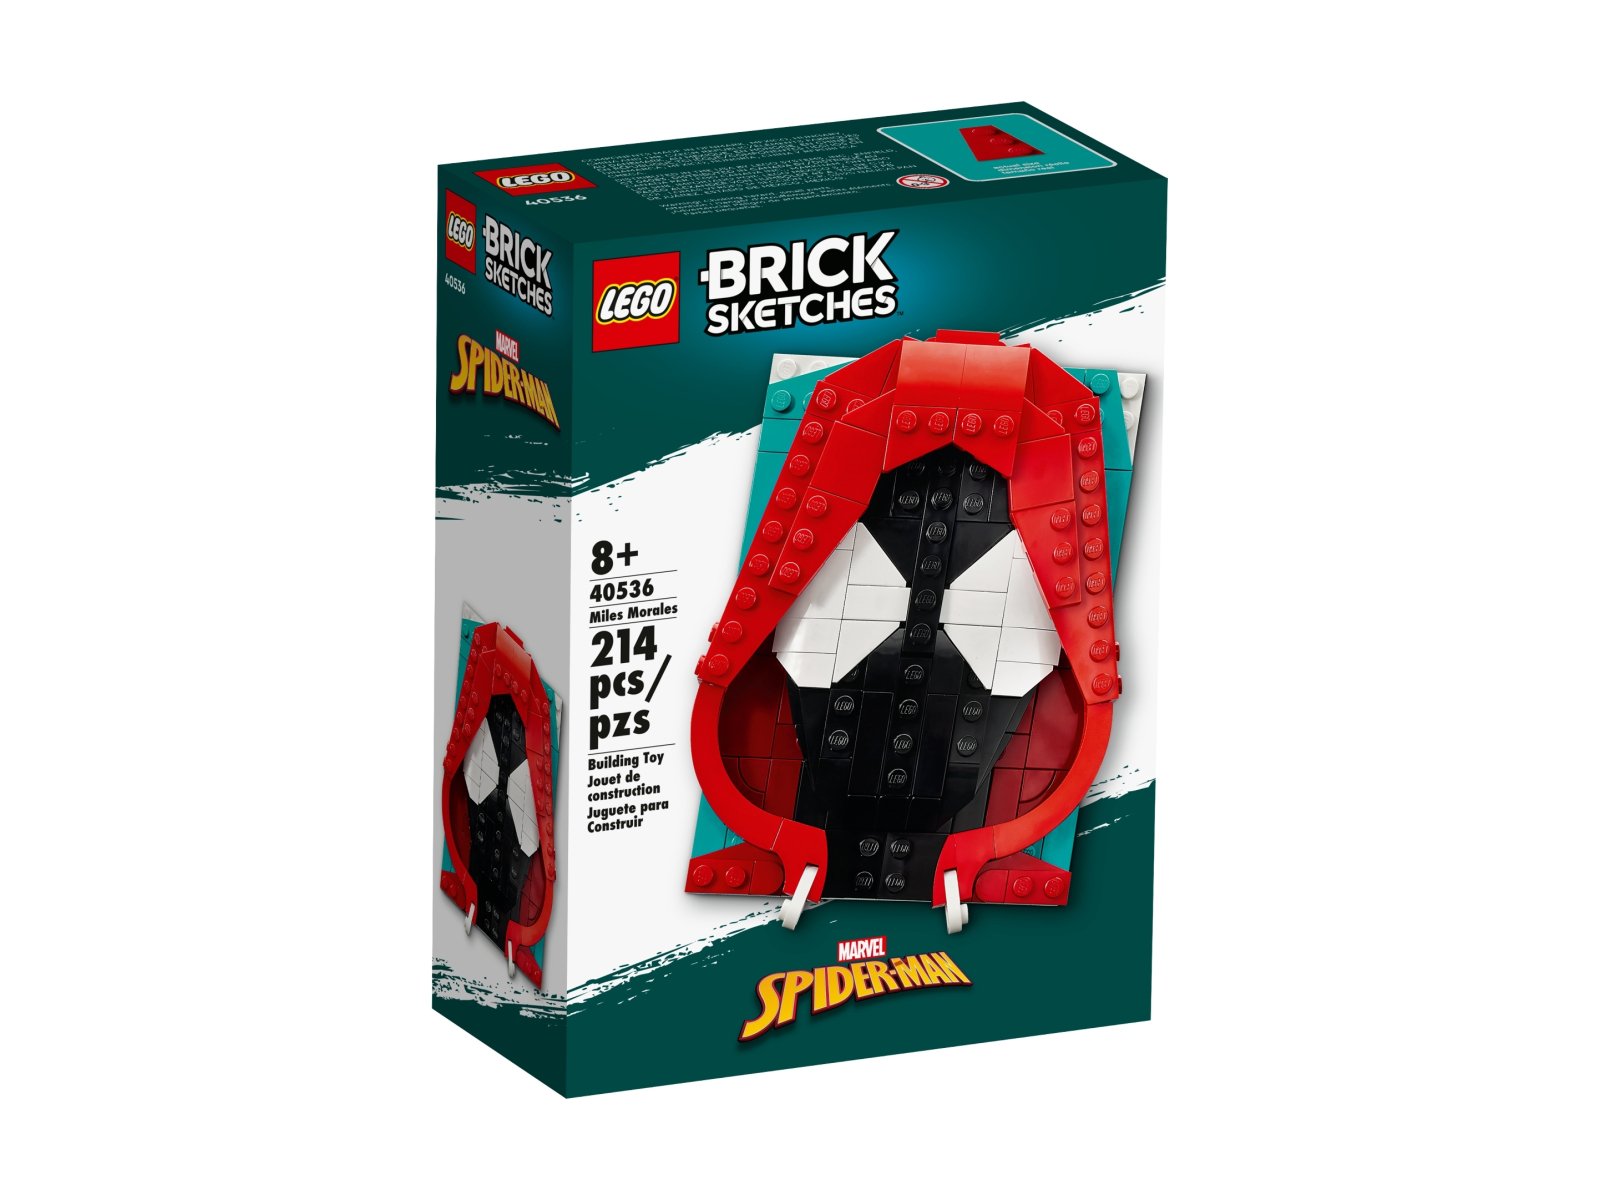 LEGO 40536 Brick Sketches Miles Morales